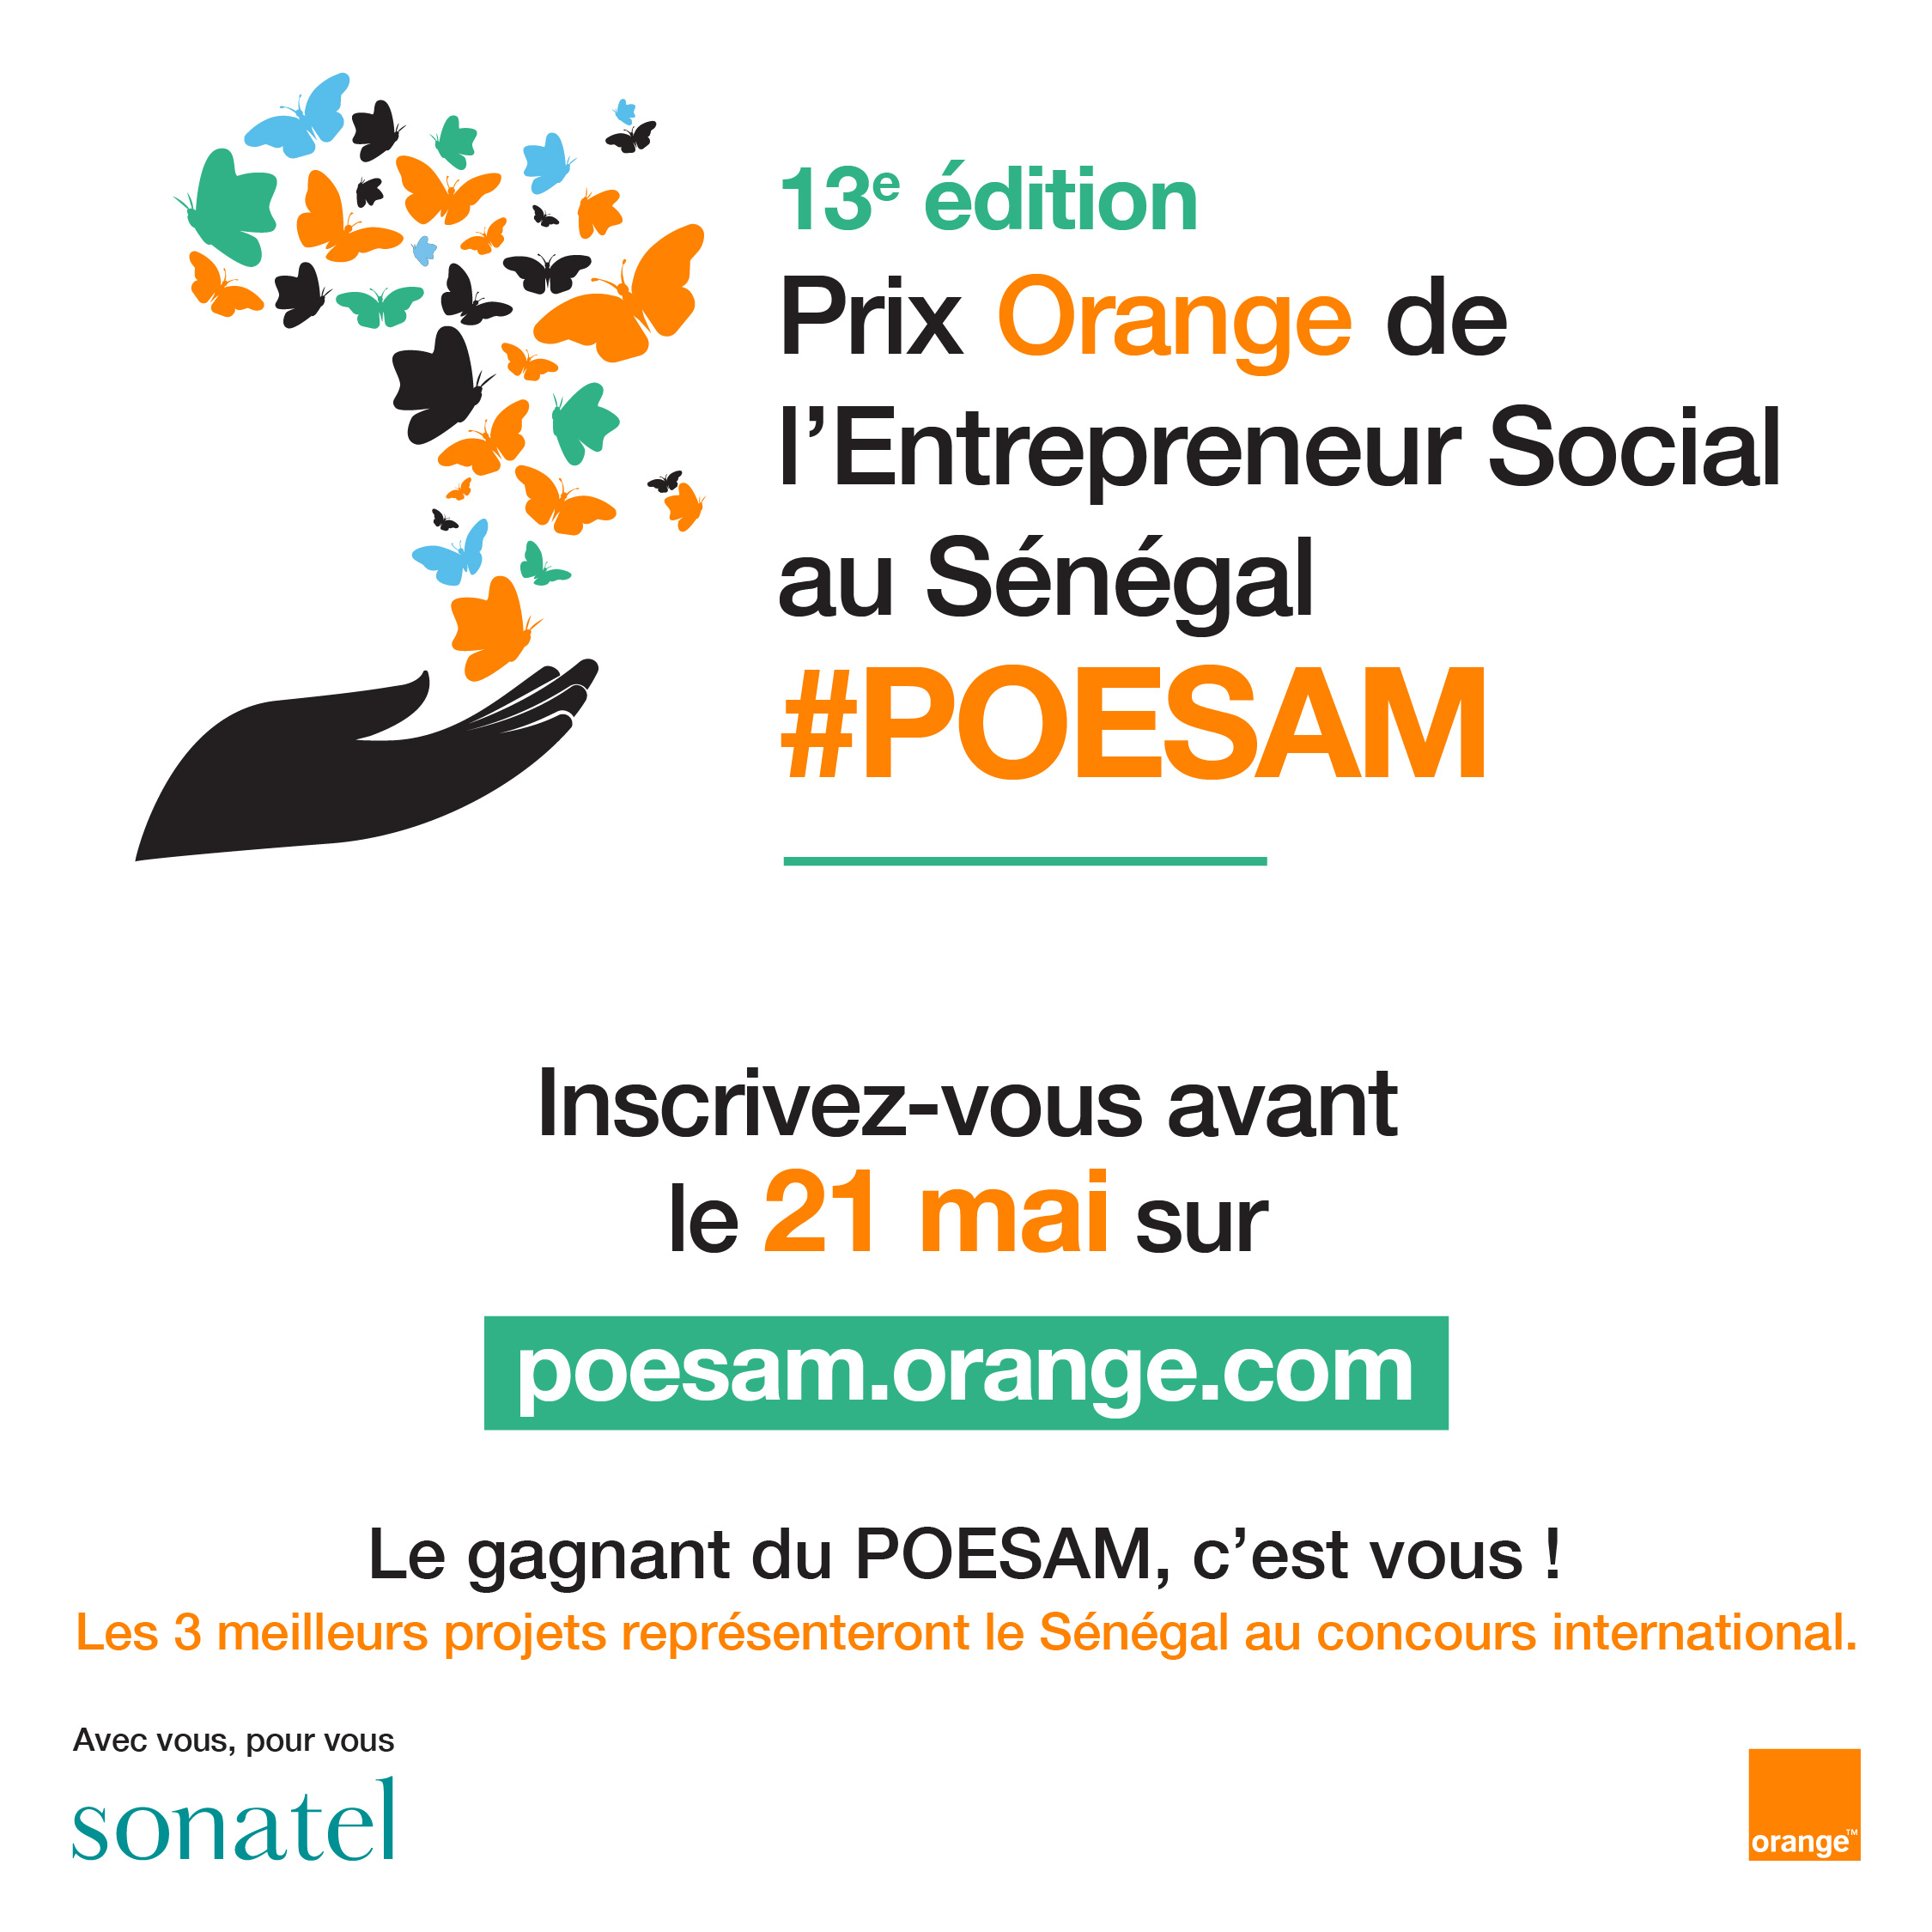 Orange lance la 13ème édition du Prix Orange de l’Entrepreneur Social en Afrique et au Moyen-Orient (POESAM) pour soutenir l’innovation sociale et encourager l’entrepreneuriat